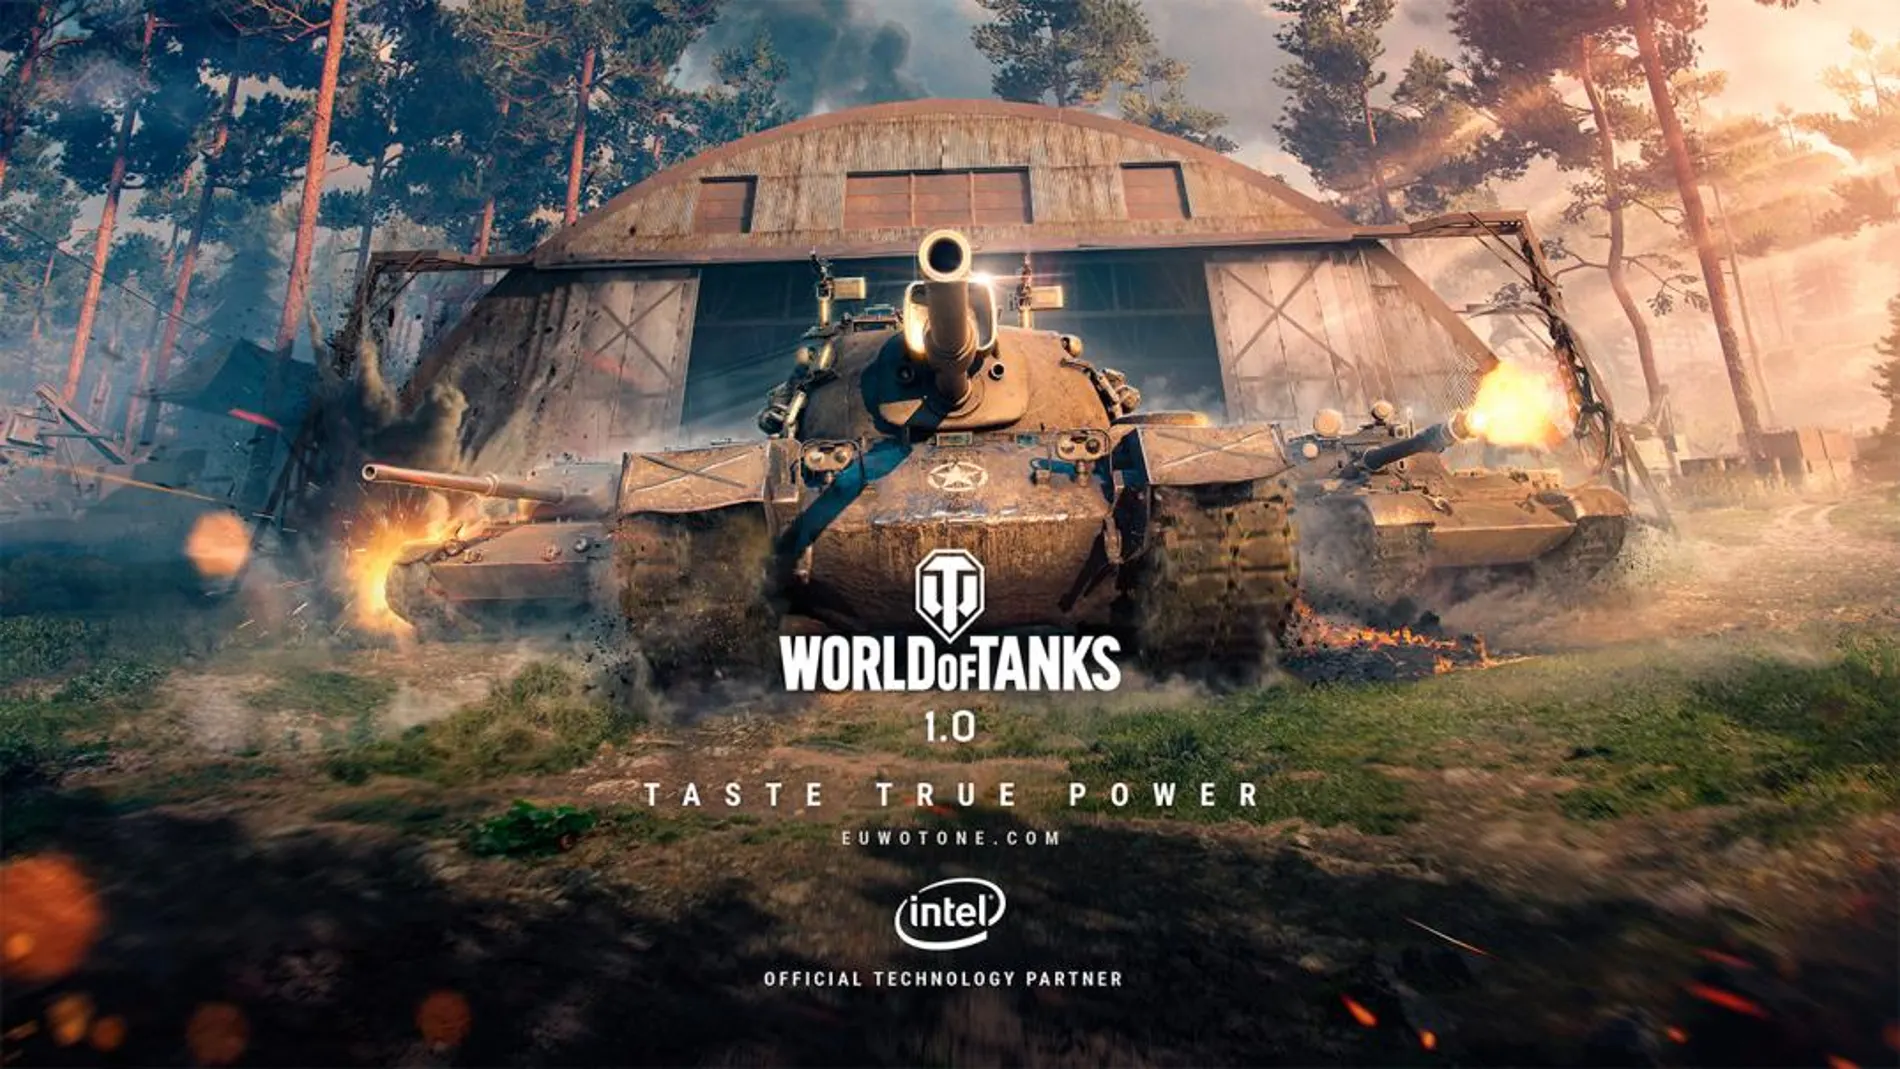 Especial - Descubrimos el futuro de World of Tanks, que estrena multitud de características